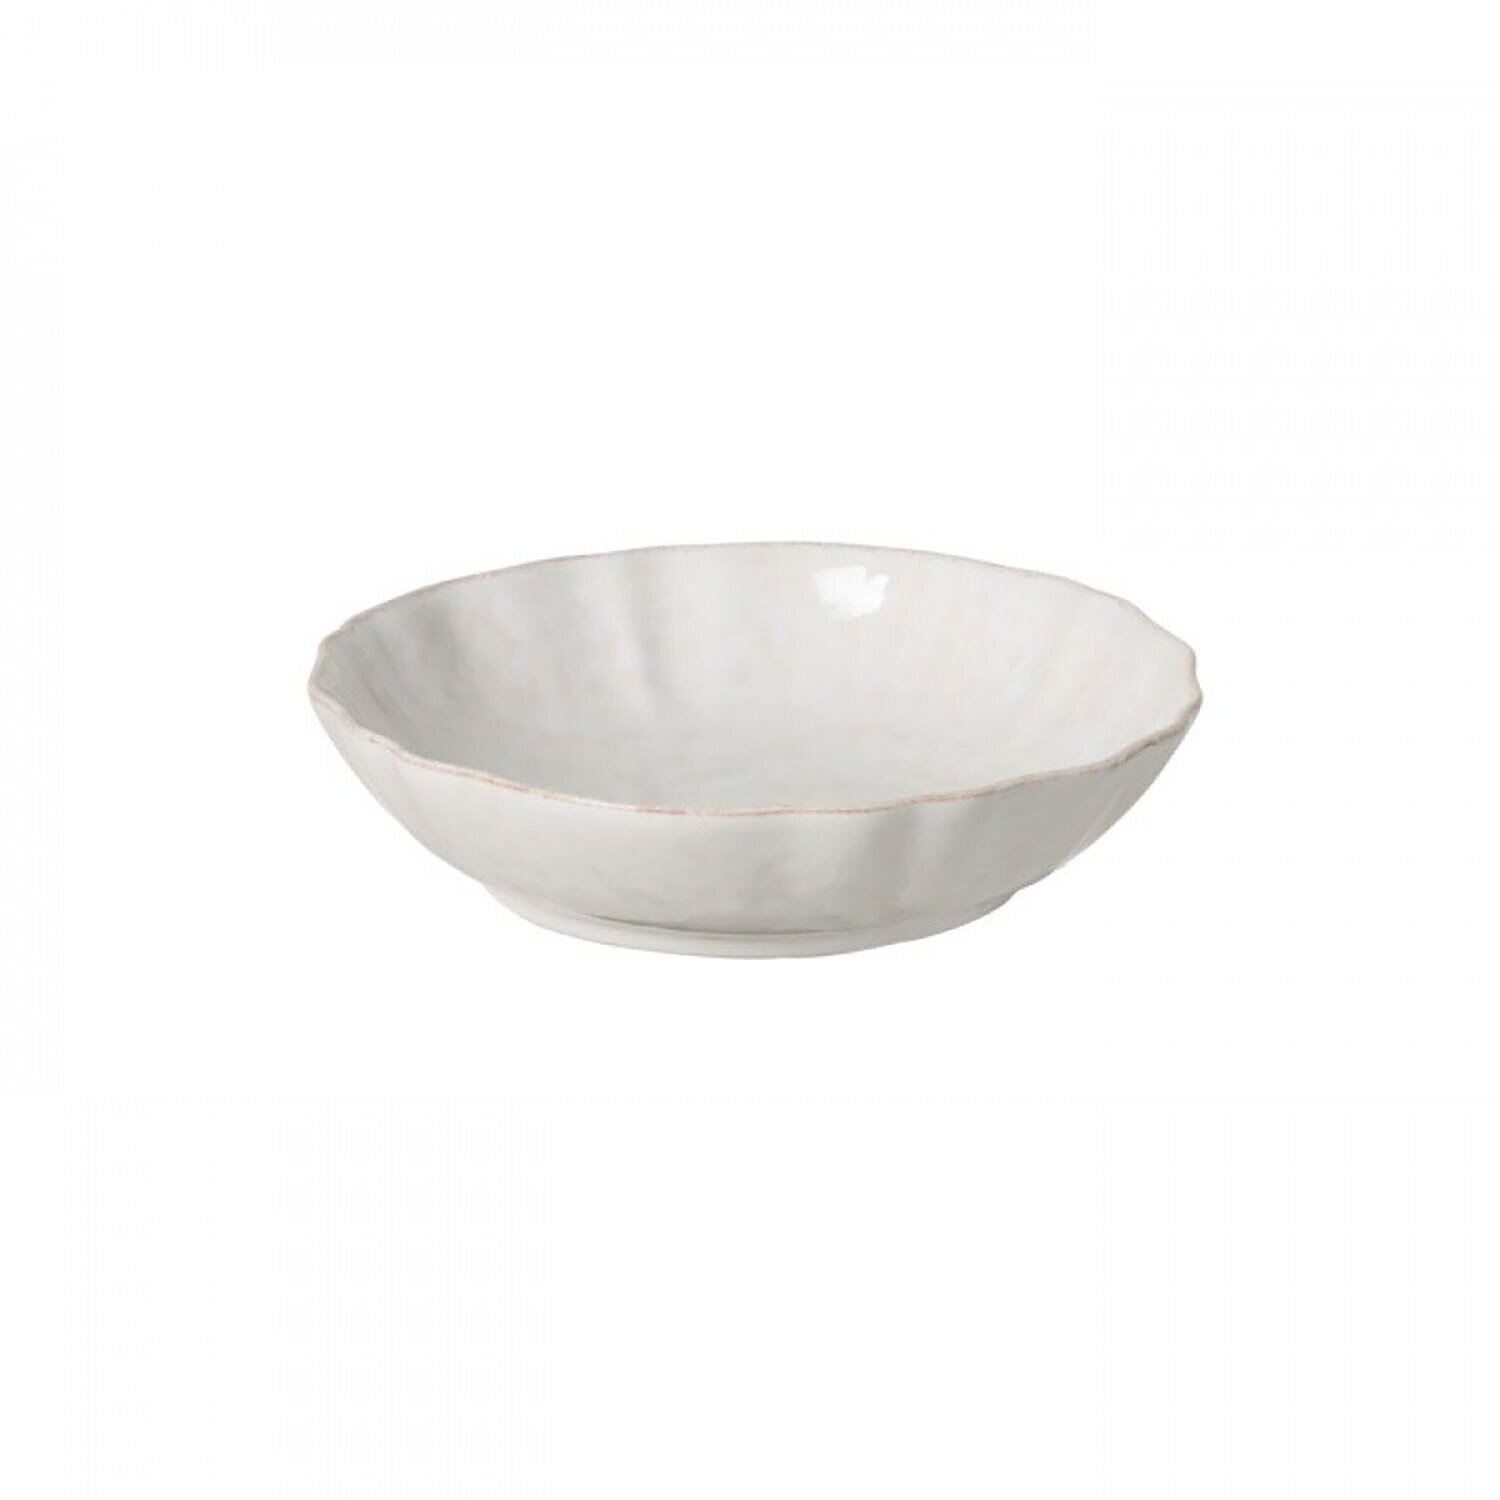 Casafina Impressions White Pasta Bowl Set of 6 IM516-WHI